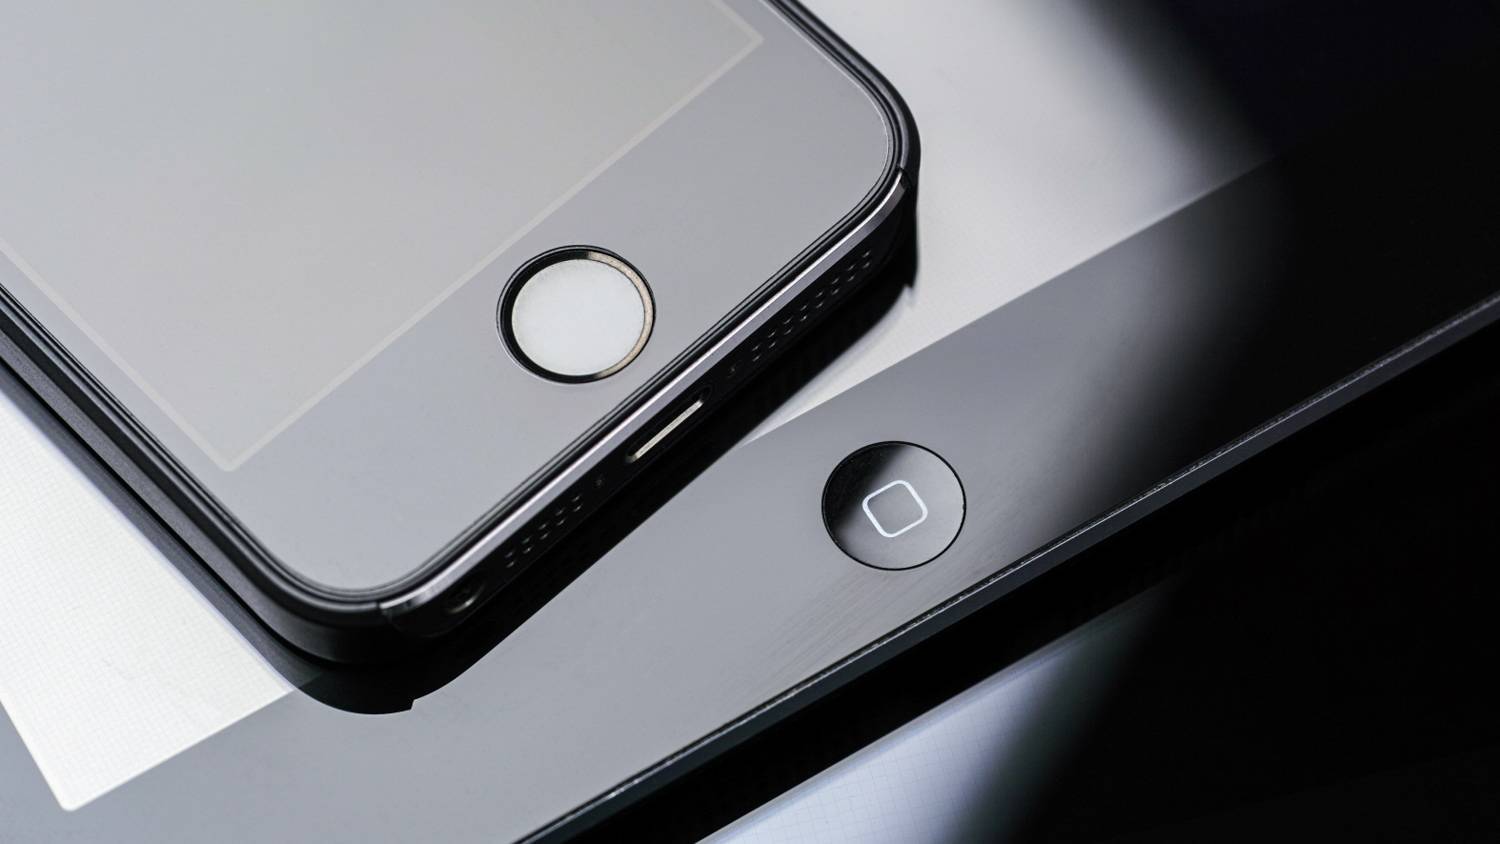 iphone ipad apple products 100645604 orig - Nuovi pulsanti nell’era del touch screen filosofia hard